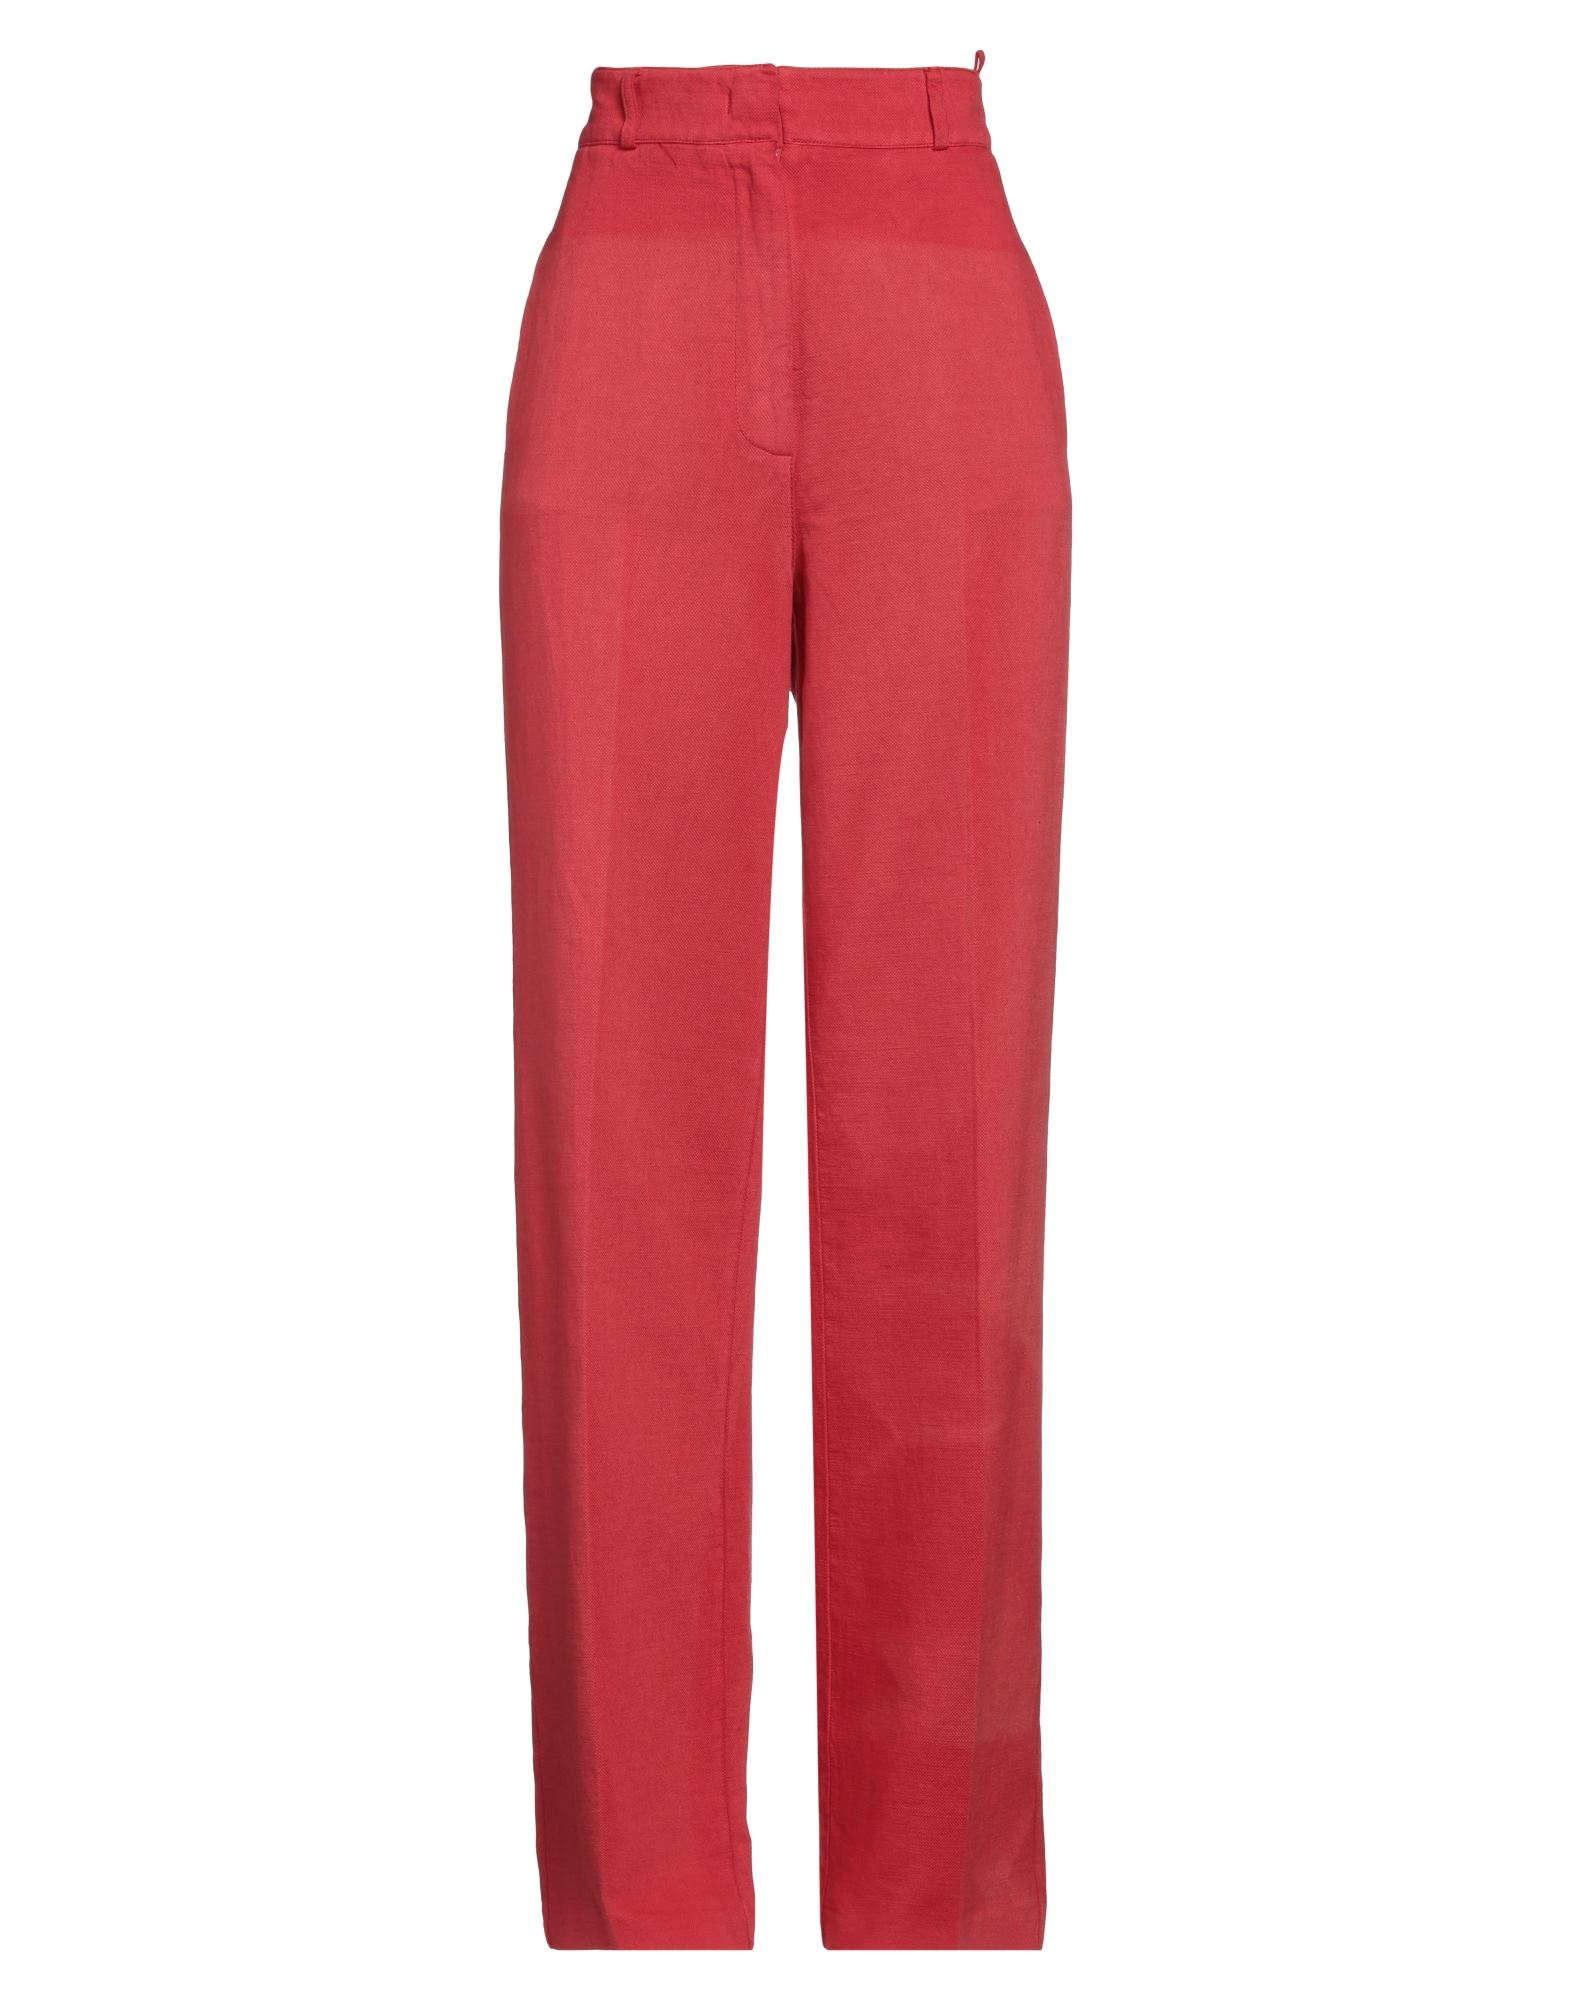 Shop Drumohr Woman Pants Red Size 4 Cotton, Linen